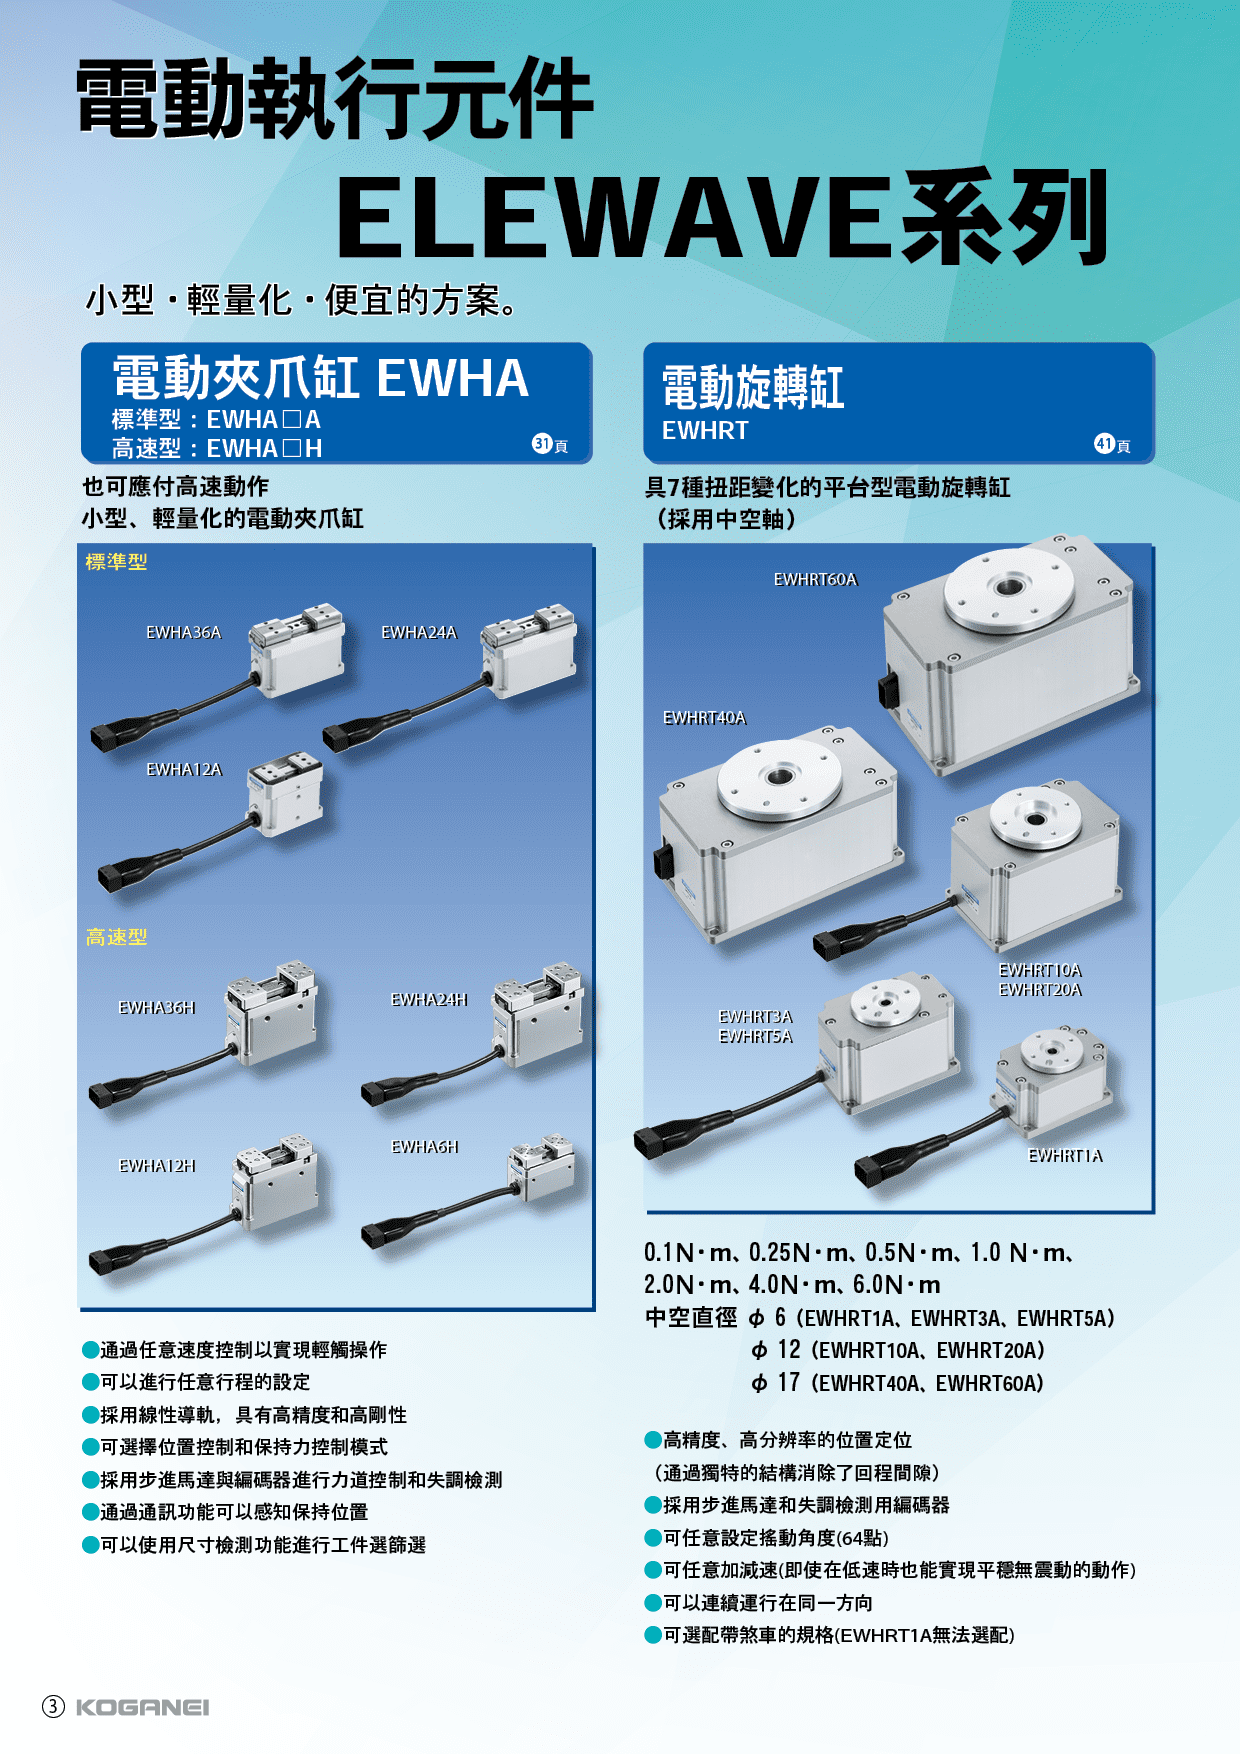 電動執行元件ELEWAVE系列-產品特色4